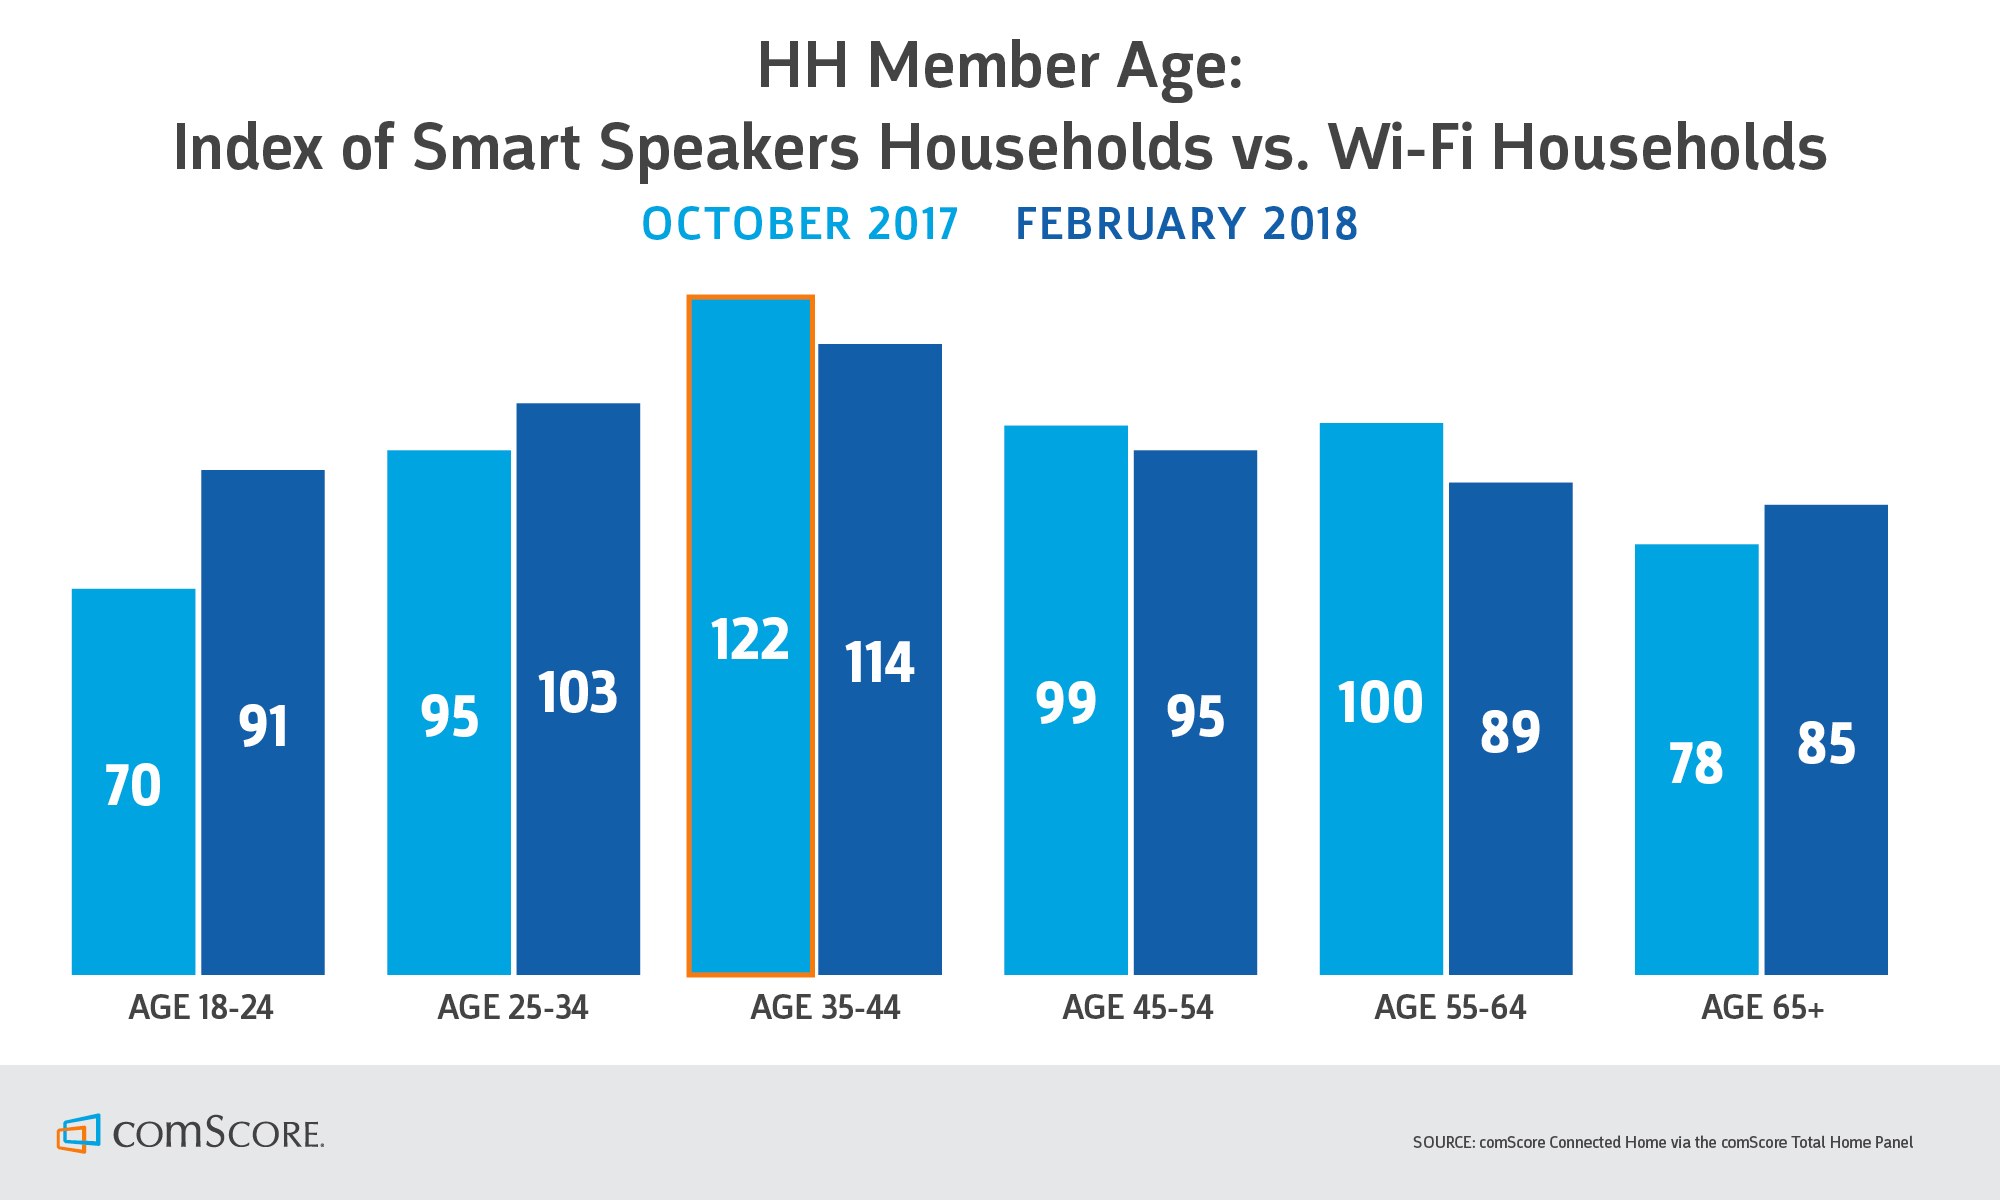 smart speaker 2018